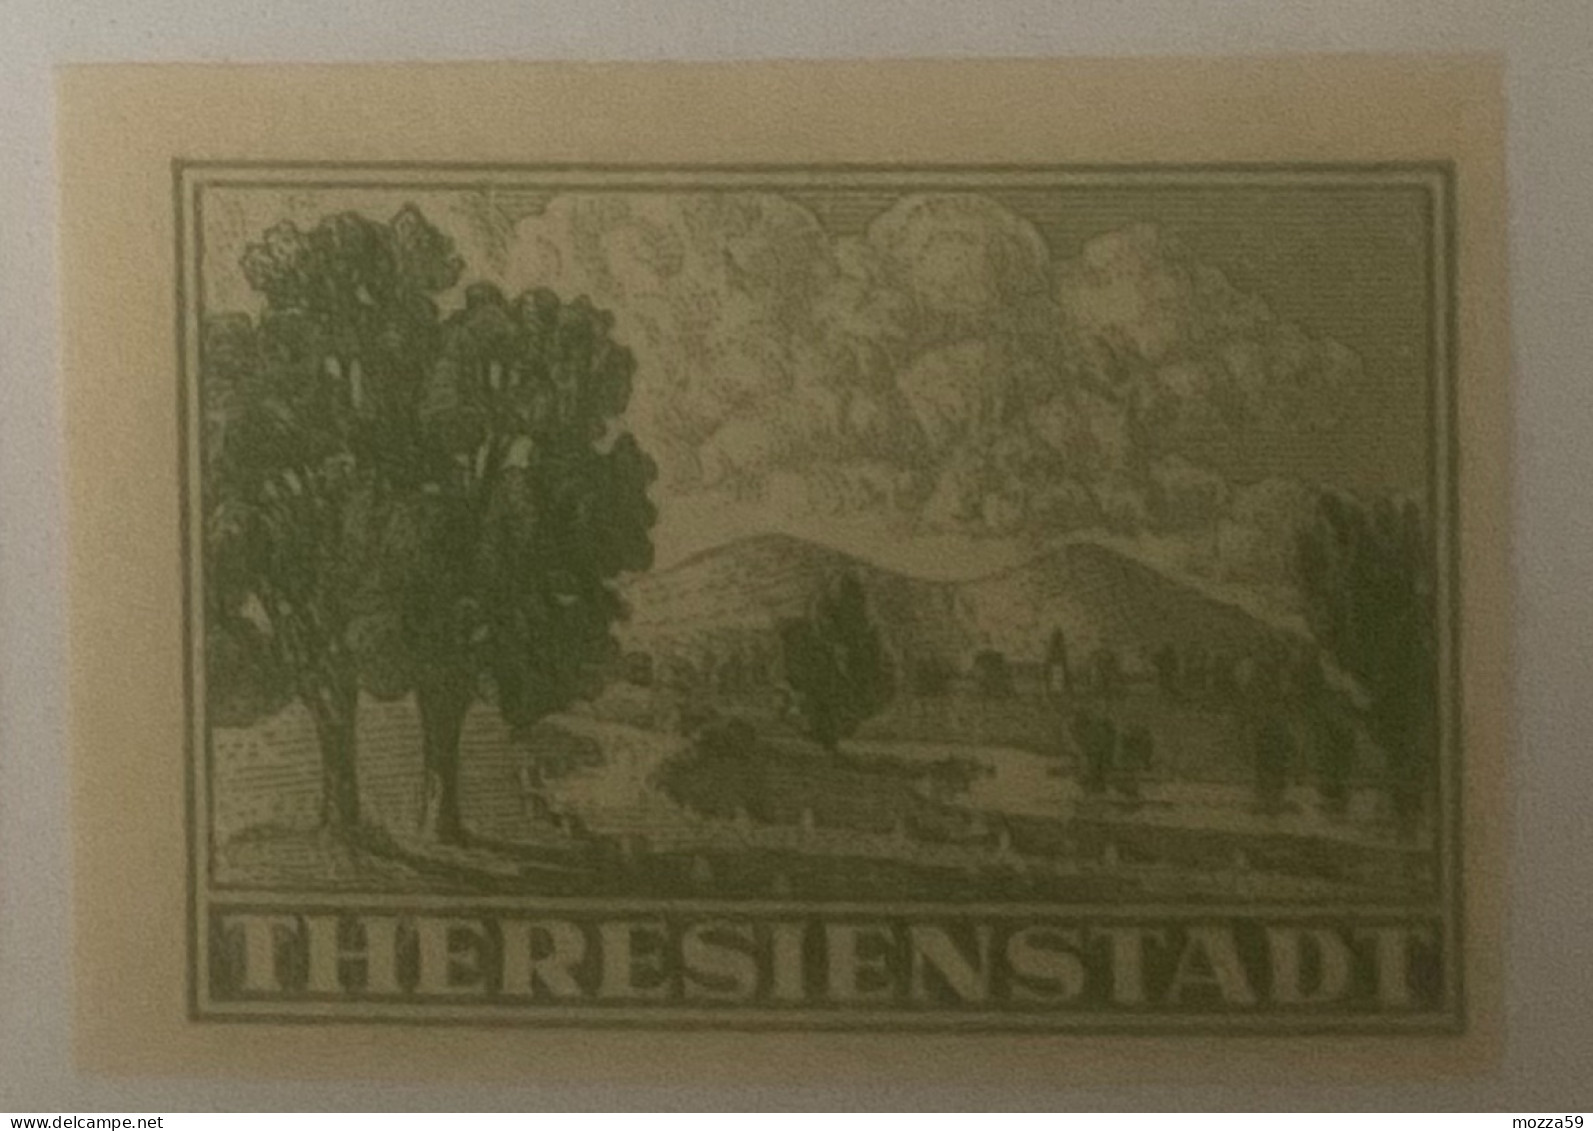 Bohmen Und Mahren, Theresienstadt/Terezin Imperf Stamp -- Interesting - Lettres & Documents